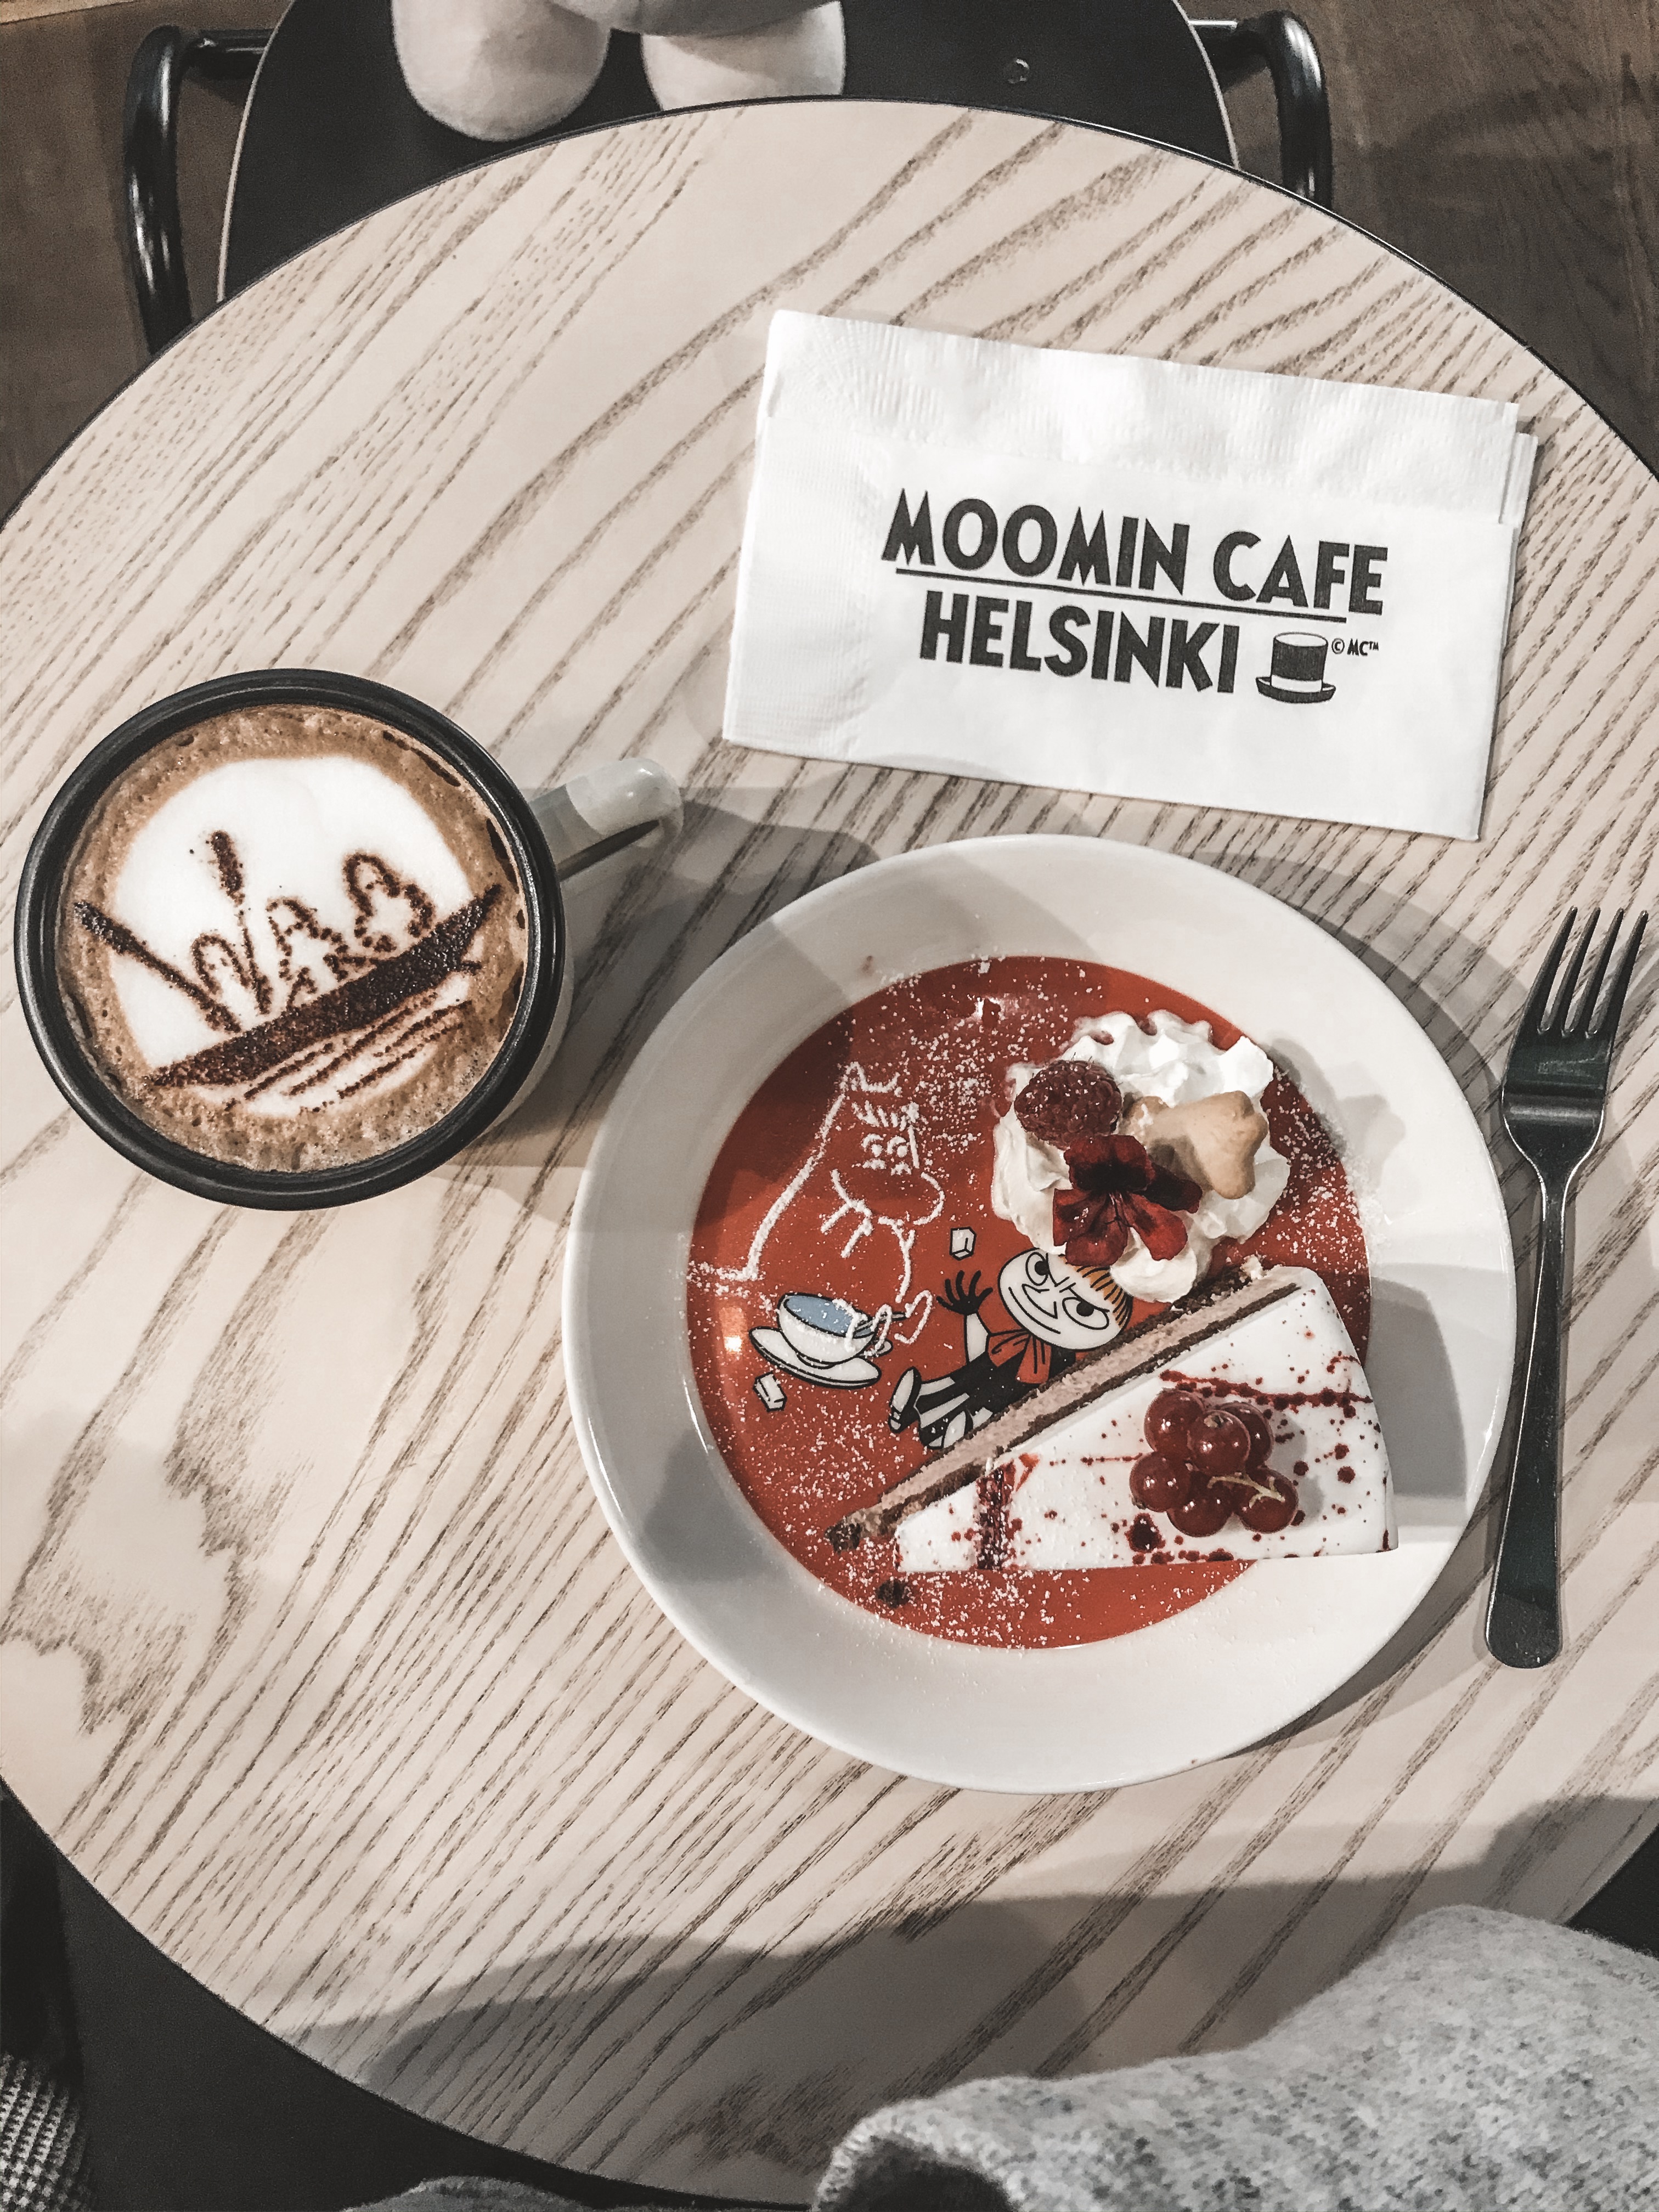 Moomin Café in Helsinki, Finland